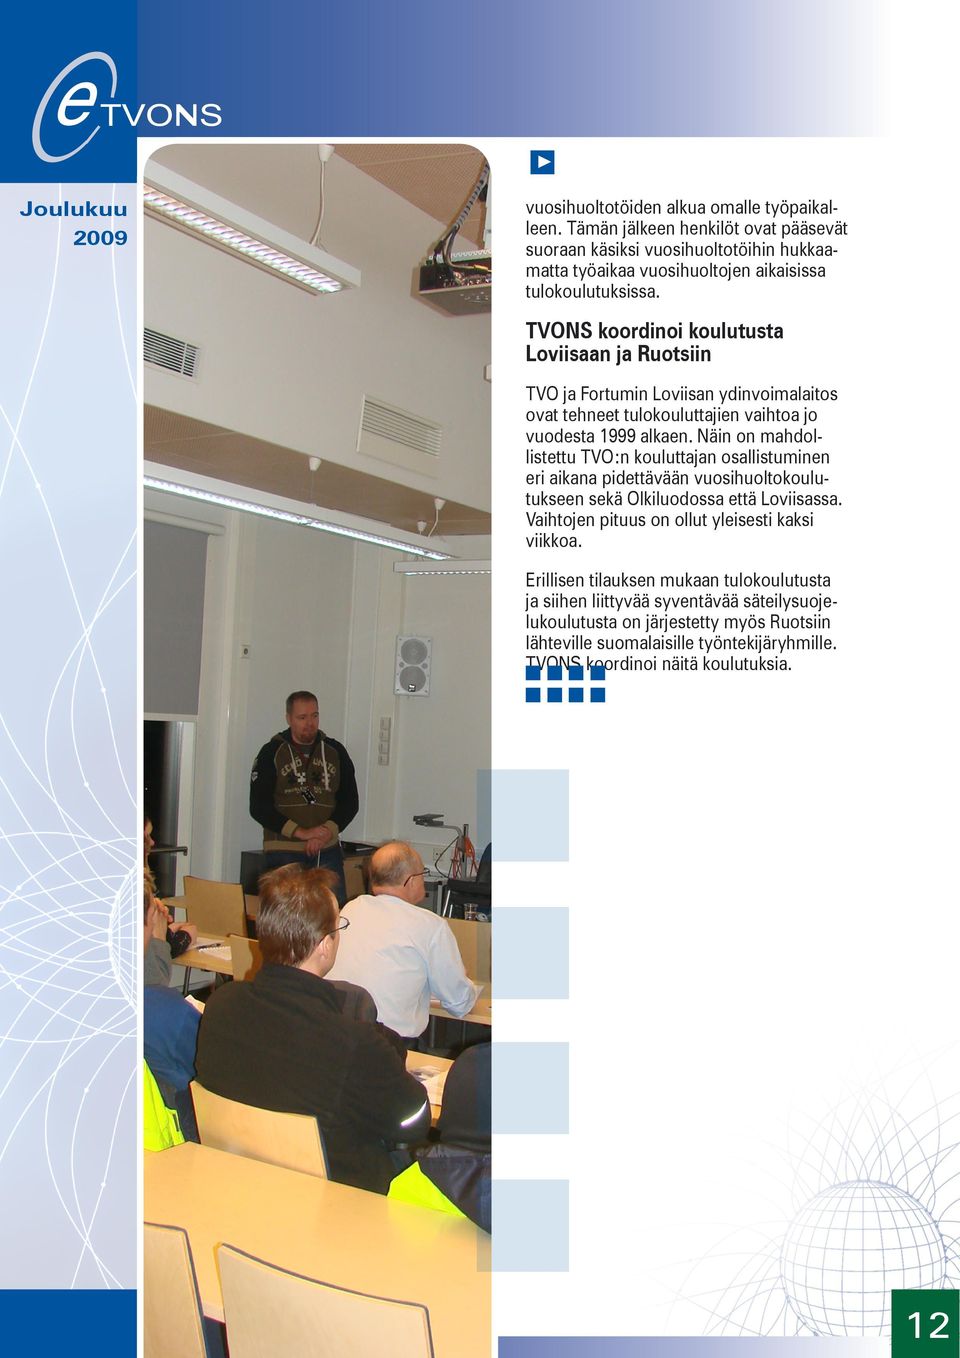 Näin on mahdollistettu TVO:n kouluttajan osallistuminen eri aikana pidettävään vuosihuoltokoulutukseen sekä Olkiluodossa että Loviisassa.